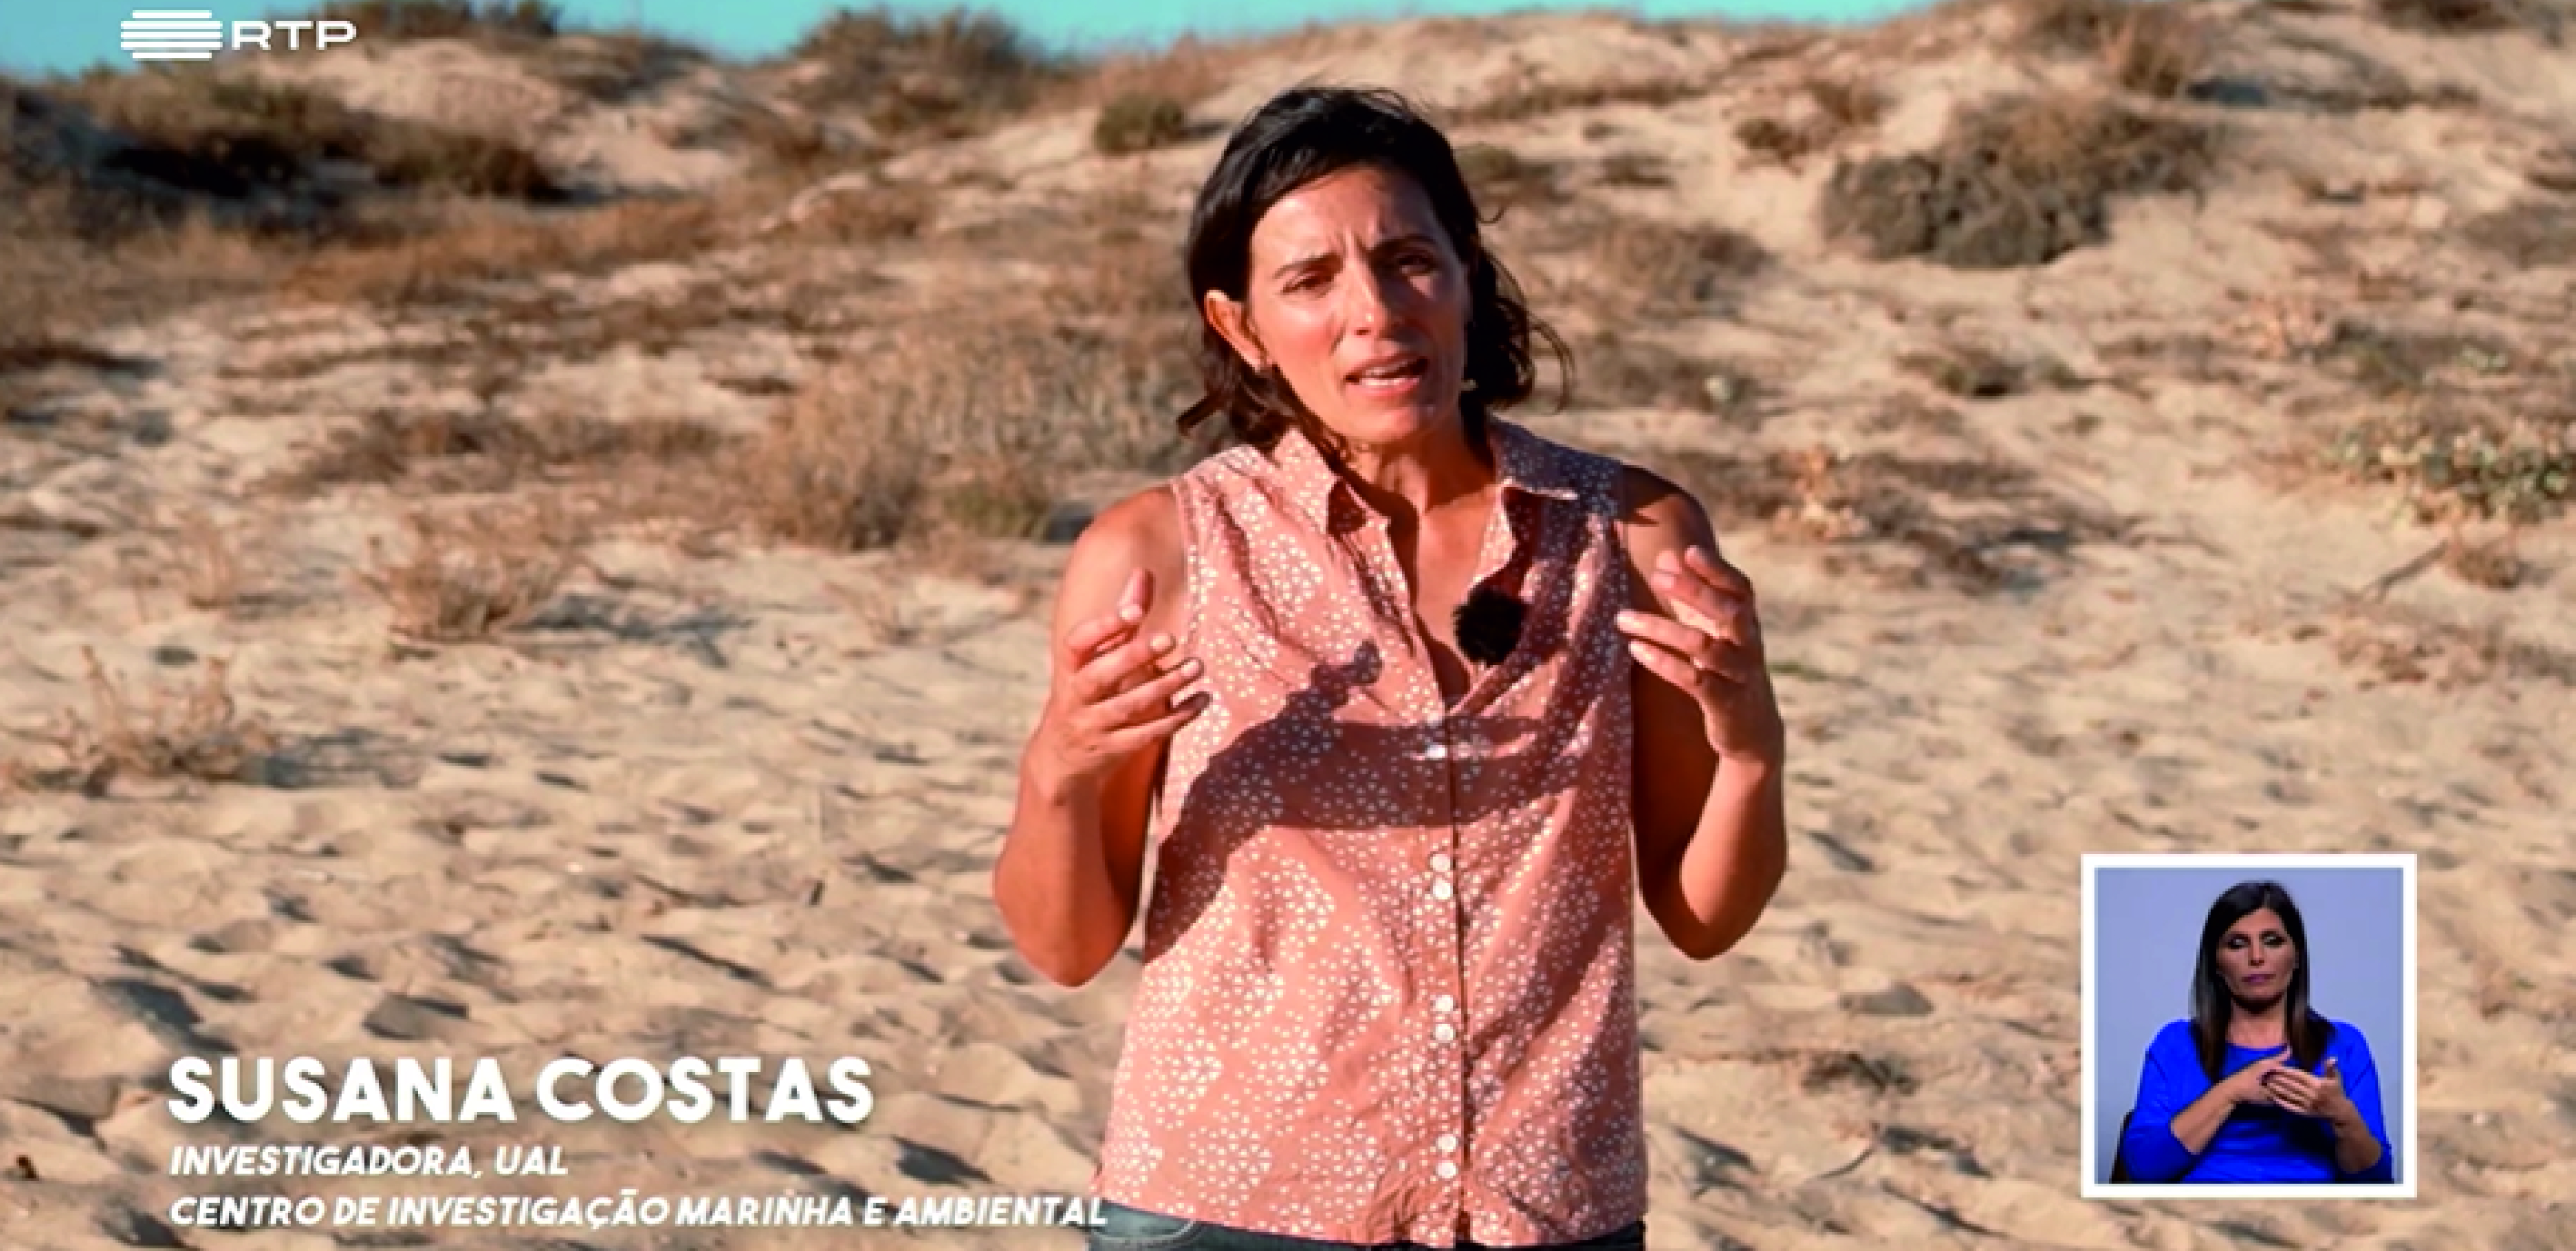 Susana Costas, investigadora do CIMA, participou no episodio 30 o programa da RTP Biosfera intitulado 